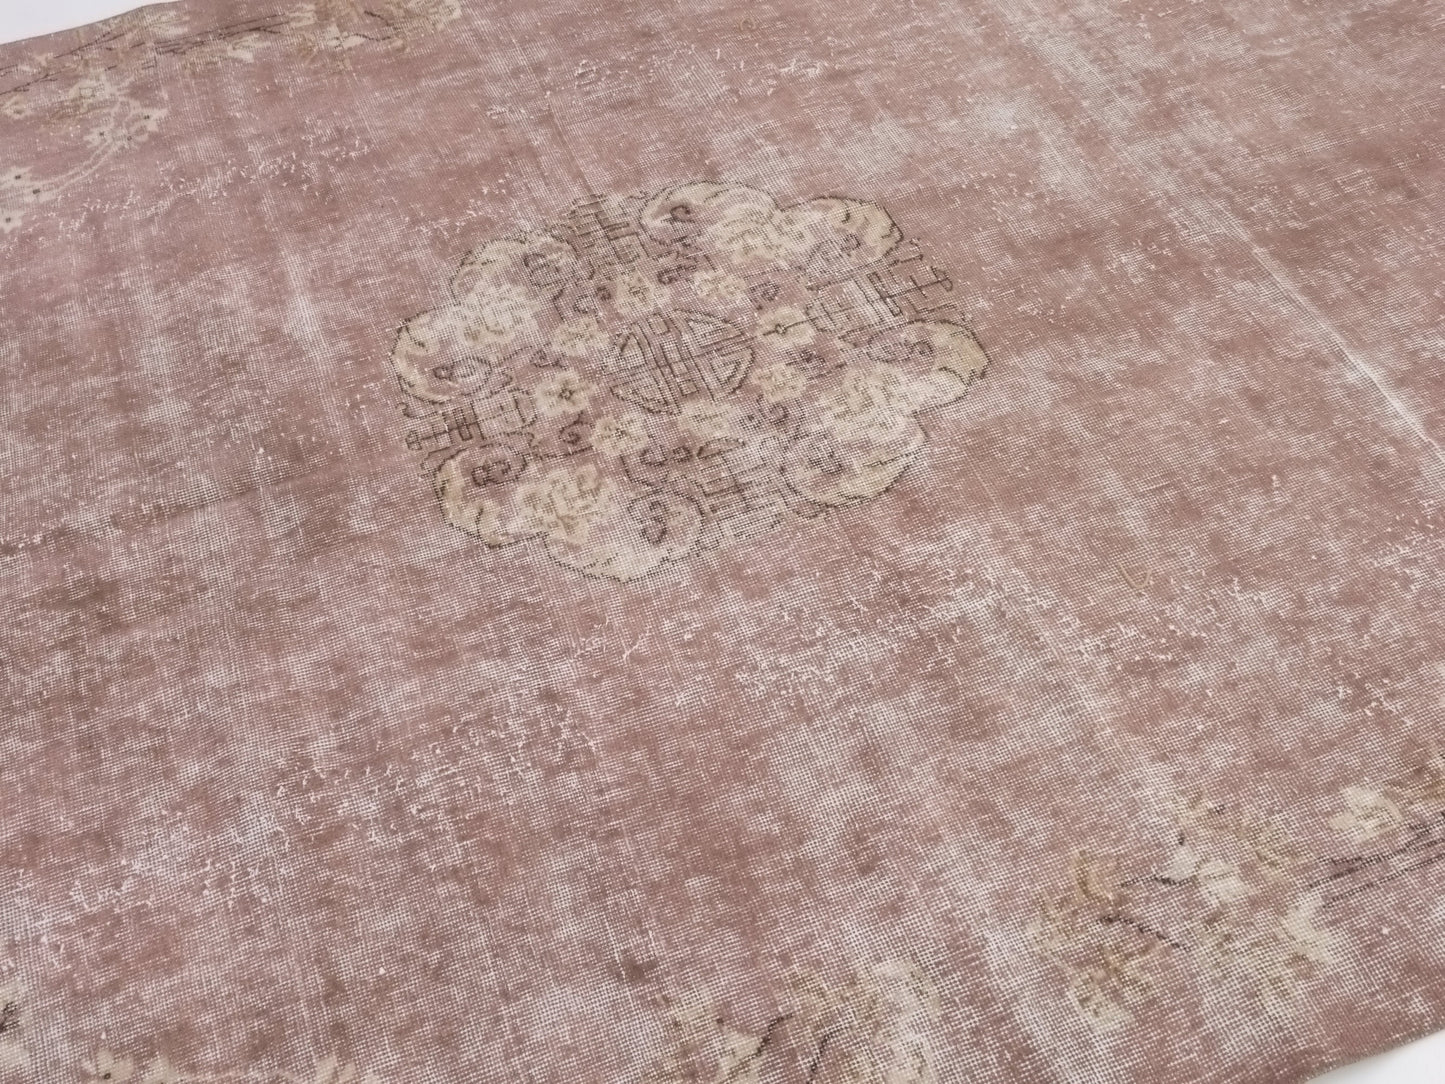 Pink Oushak rug, 6x9 Turkish rug, Carpet rug, Vintage rug, Area rug, Handmade rug, Antique rug, Turkish carpet, Neutral rug,10318